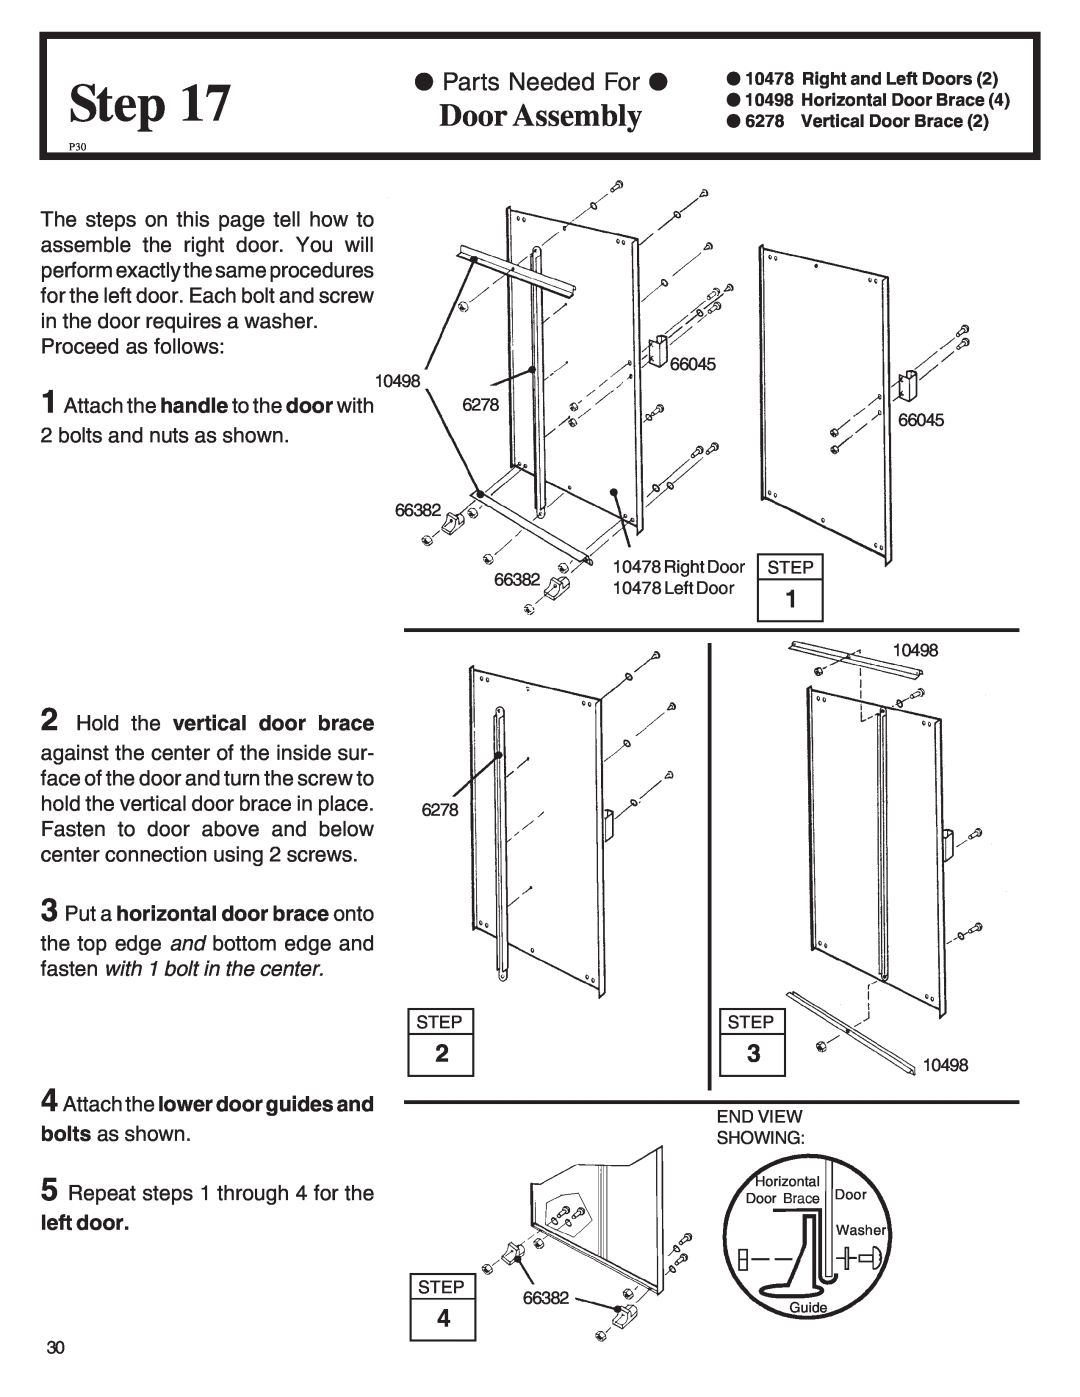 Arrow Plastic LM86, WL86-A Door Assembly, Step, Hold the vertical door brace, Put a horizontal door brace onto, left door 